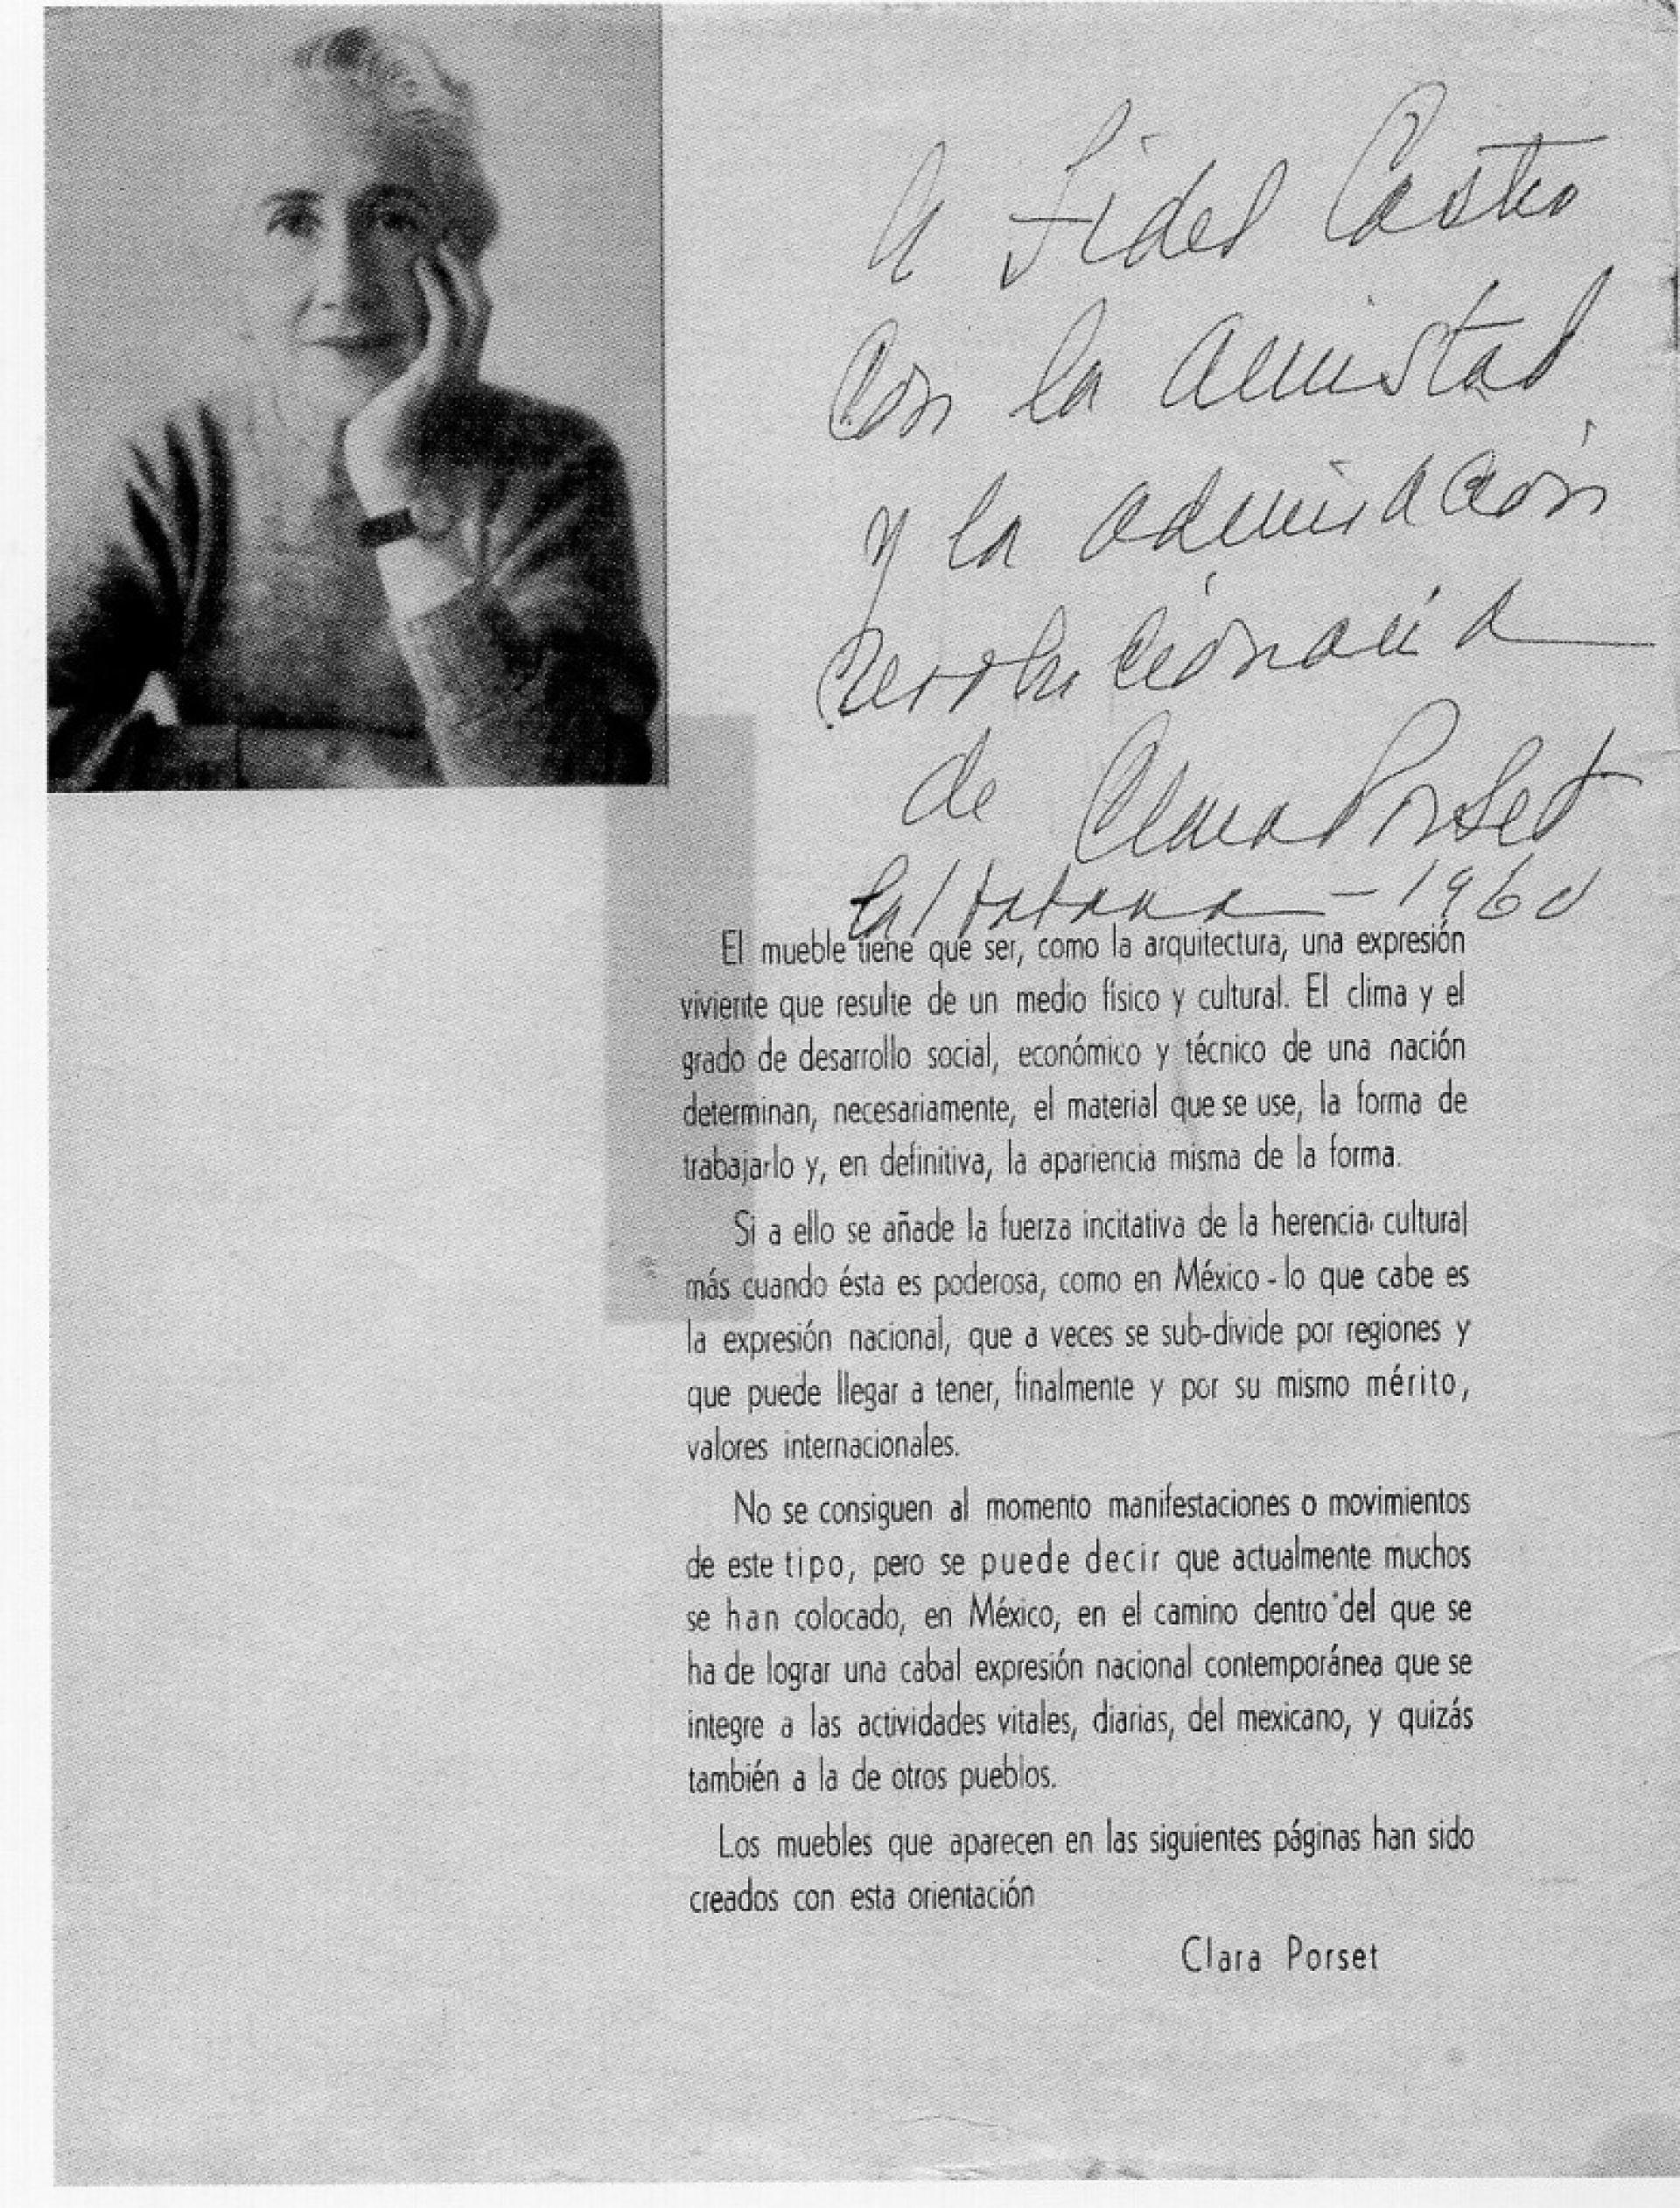 IRGSA with inscription from Clara Porset to Fidel Castro, 1960. | Photo via Salinas, Oscar. Una vida inquieta, una obra sin igual, UNAM, México, 2001